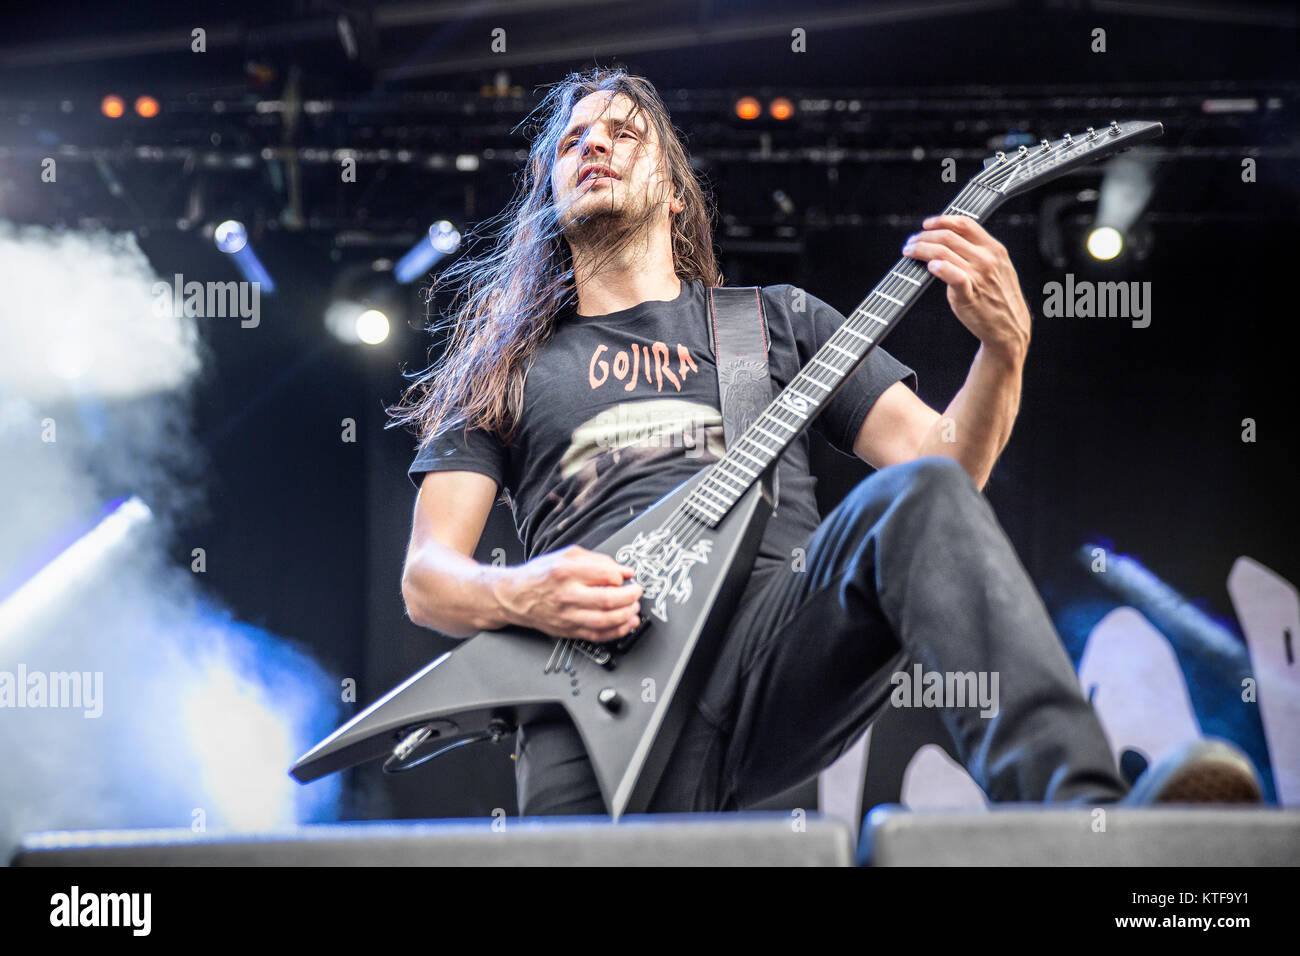 Die französischen Death Metal Band Gojira führt ein Live Konzert in der norwegischen Musik Festival Tonnen Gestein 2015. Hier Gitarrist Christian Andreu wird gesehen, live auf der Bühne. Norwegen, 19/06 2015. Stockfoto